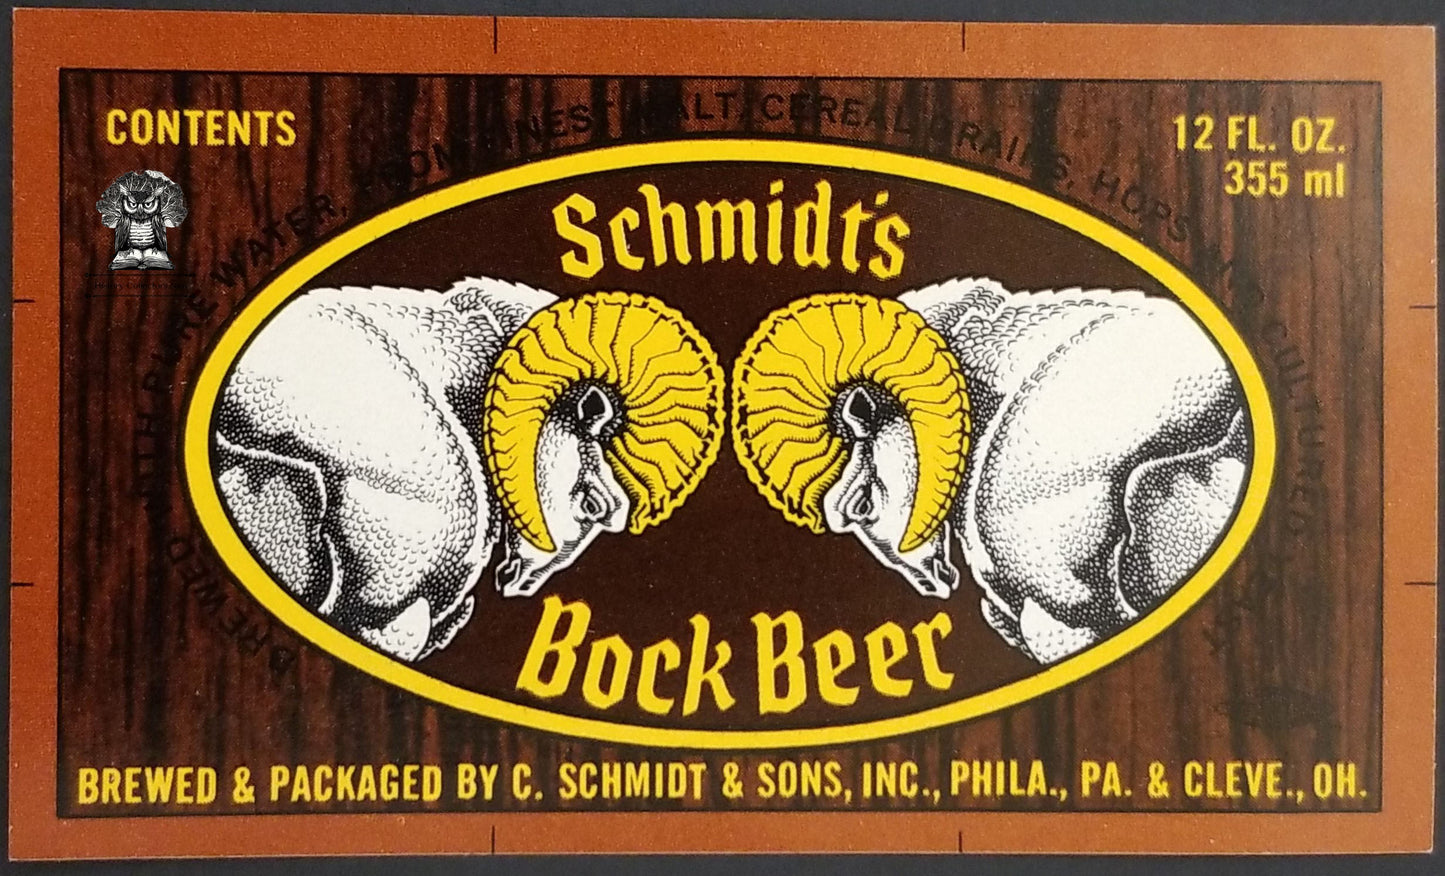 Schmidt's Bock Beer Bottle Label - Philadelphia PA Cleveland OH